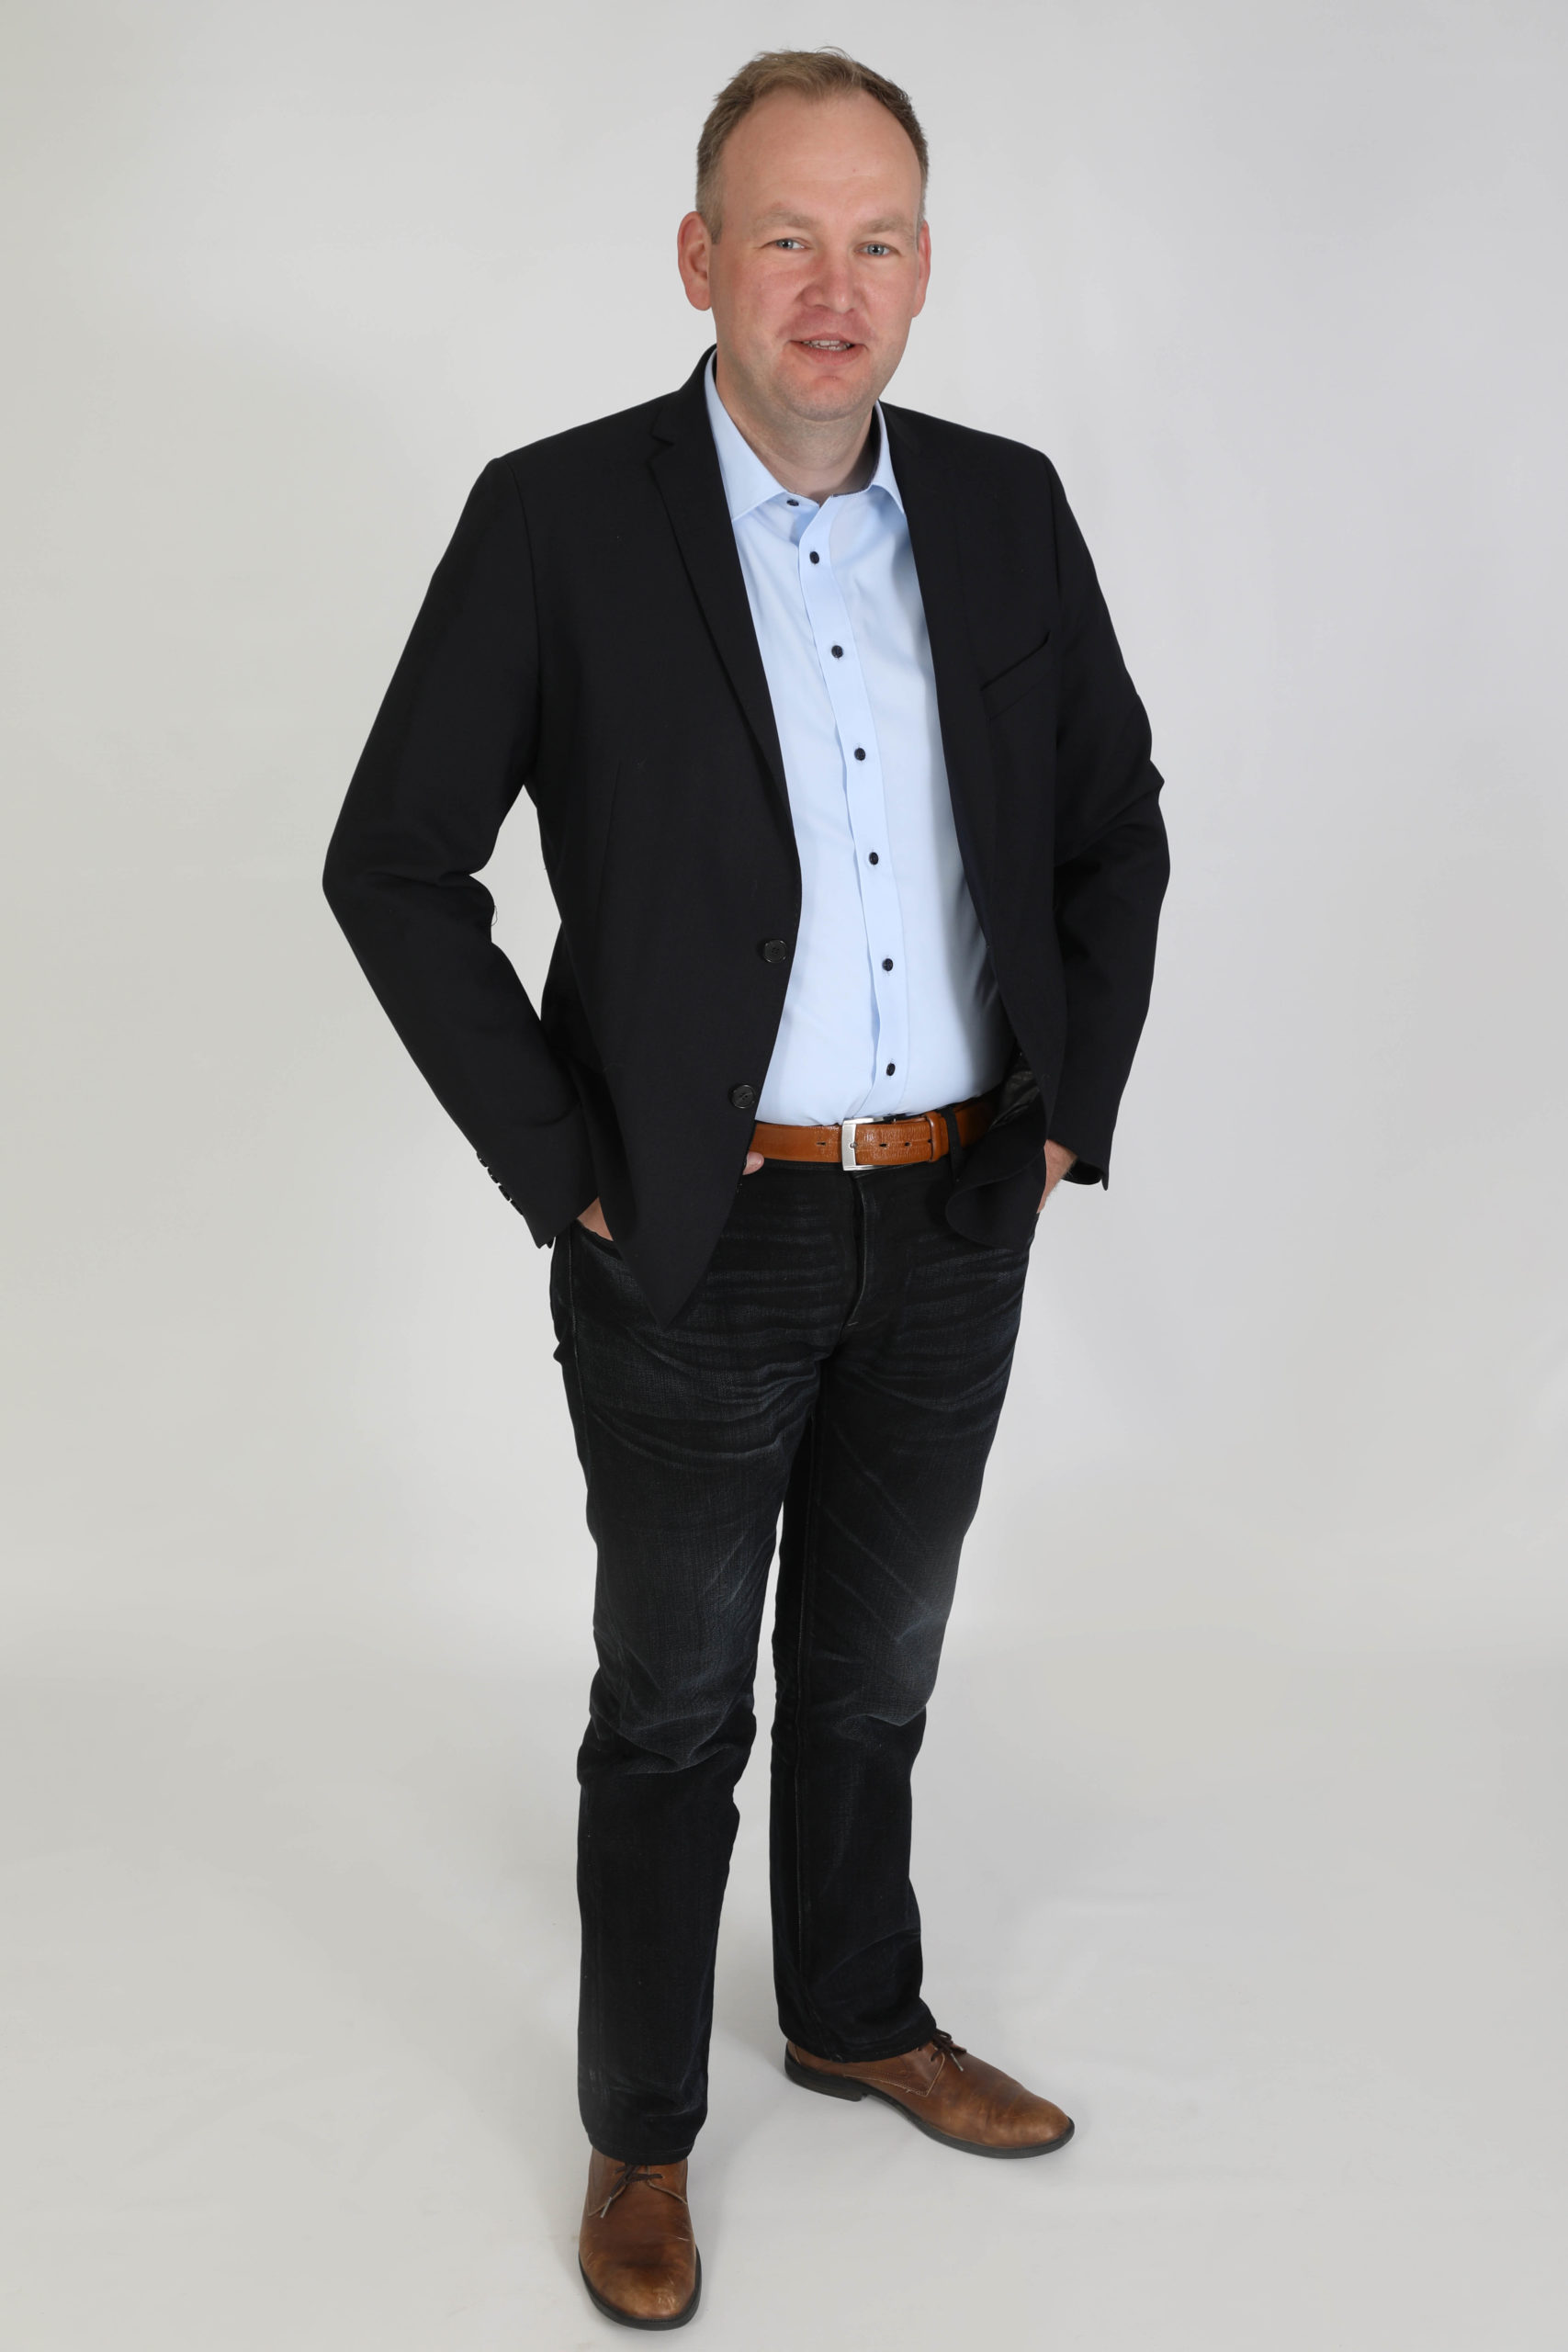 CEO Geschäftführer desk software & Consulting gmbH Sascha Breithecker